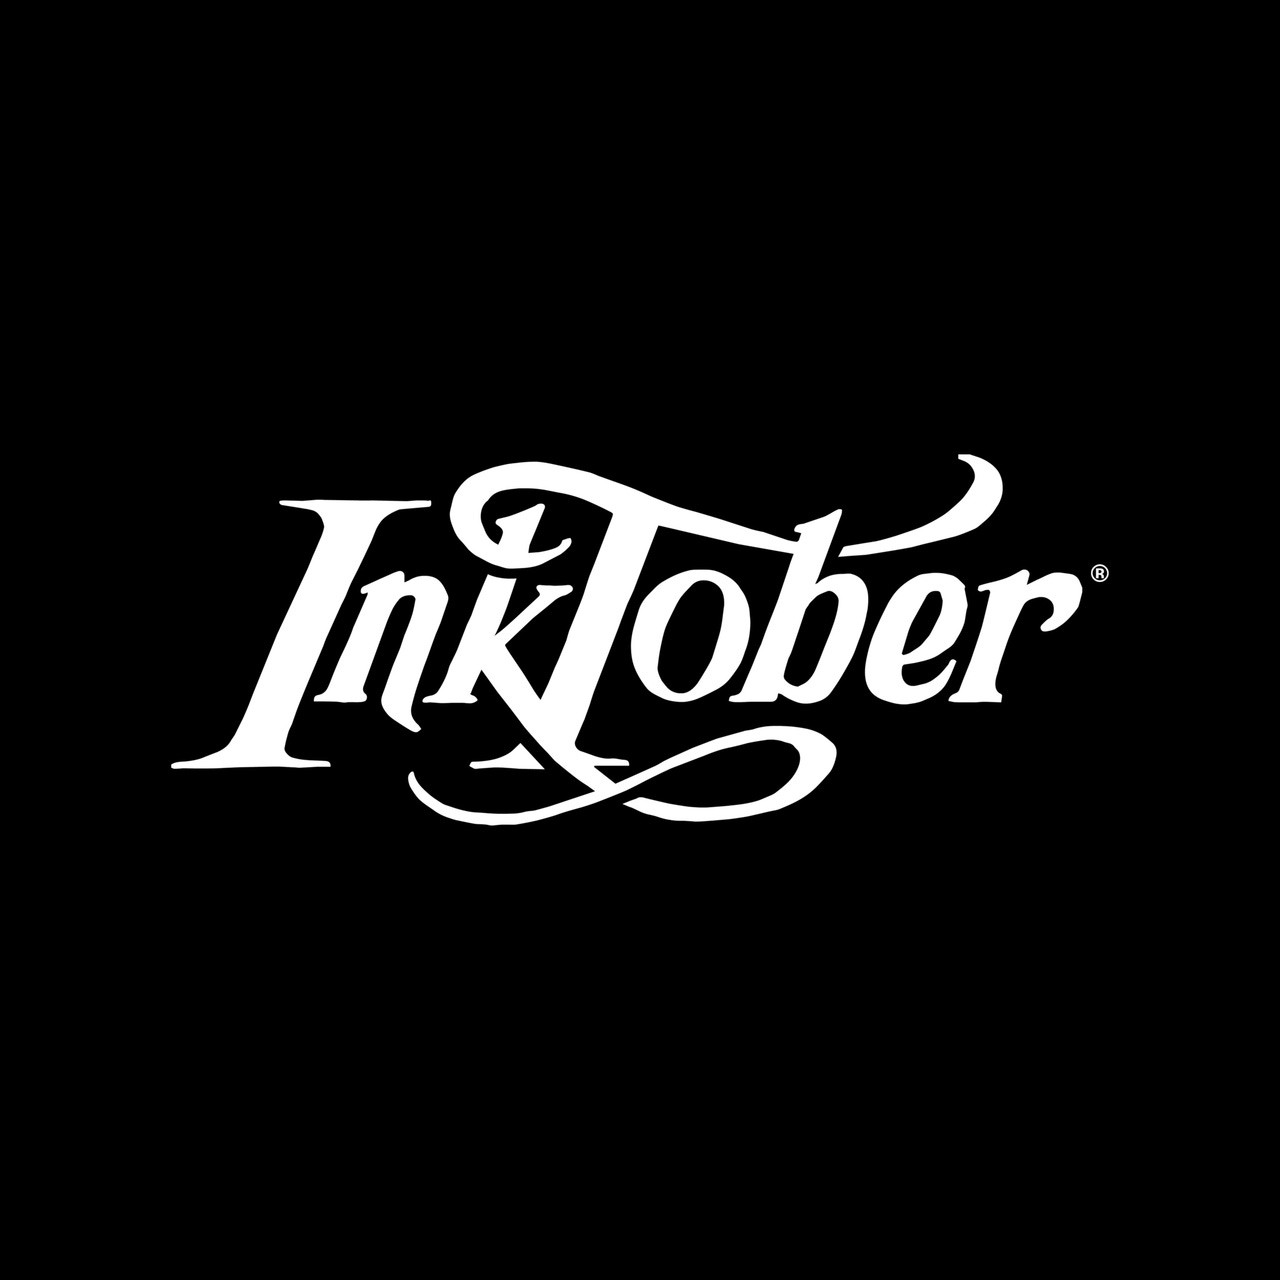 The Inktober Newsletter